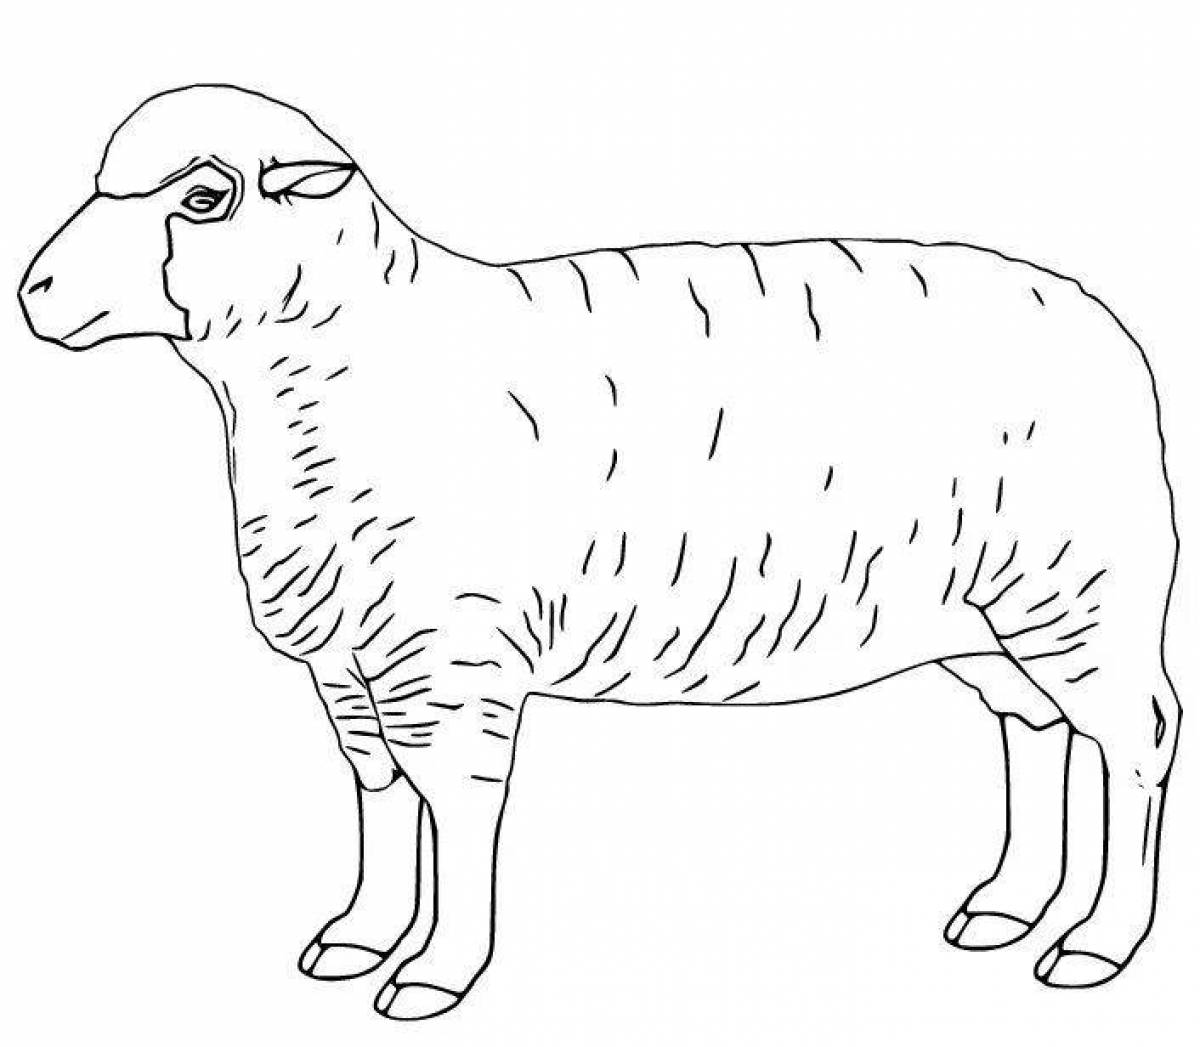 Lamb wool coloring book